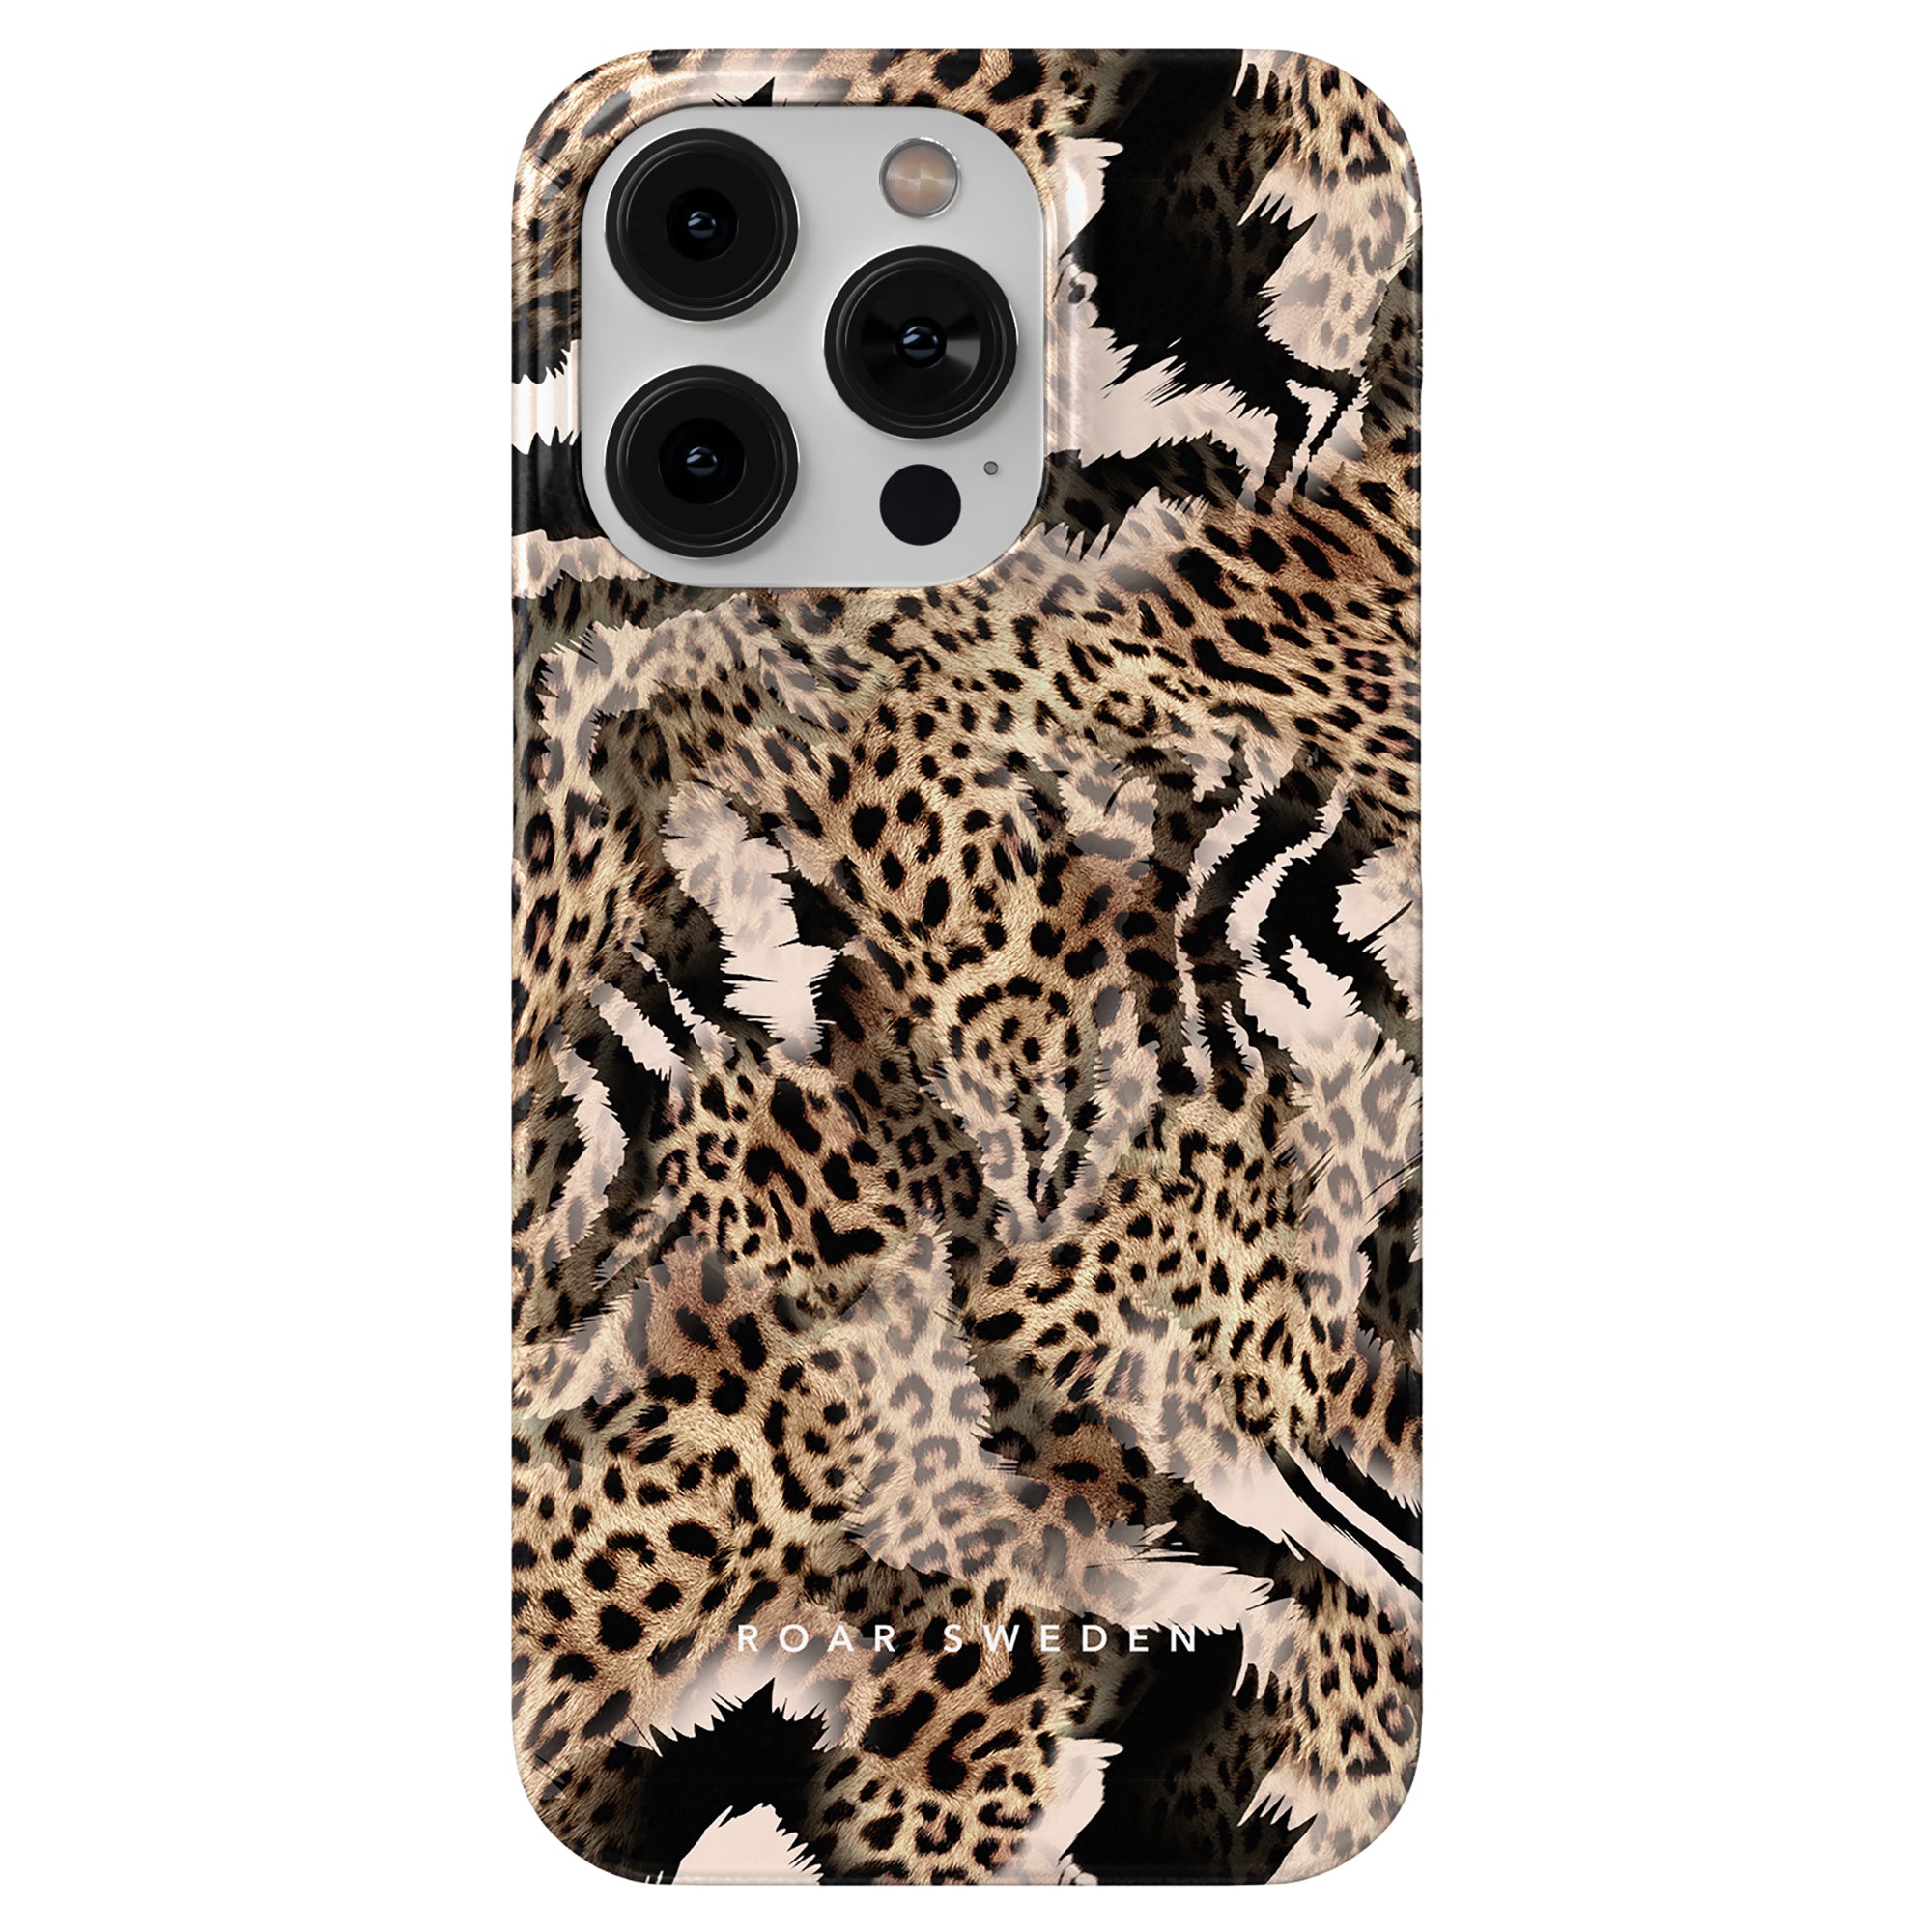 Ett leopardmönstrat Kenya - Tunt fodral för iPhone 11 med en unik Kenya-inspirerad design.